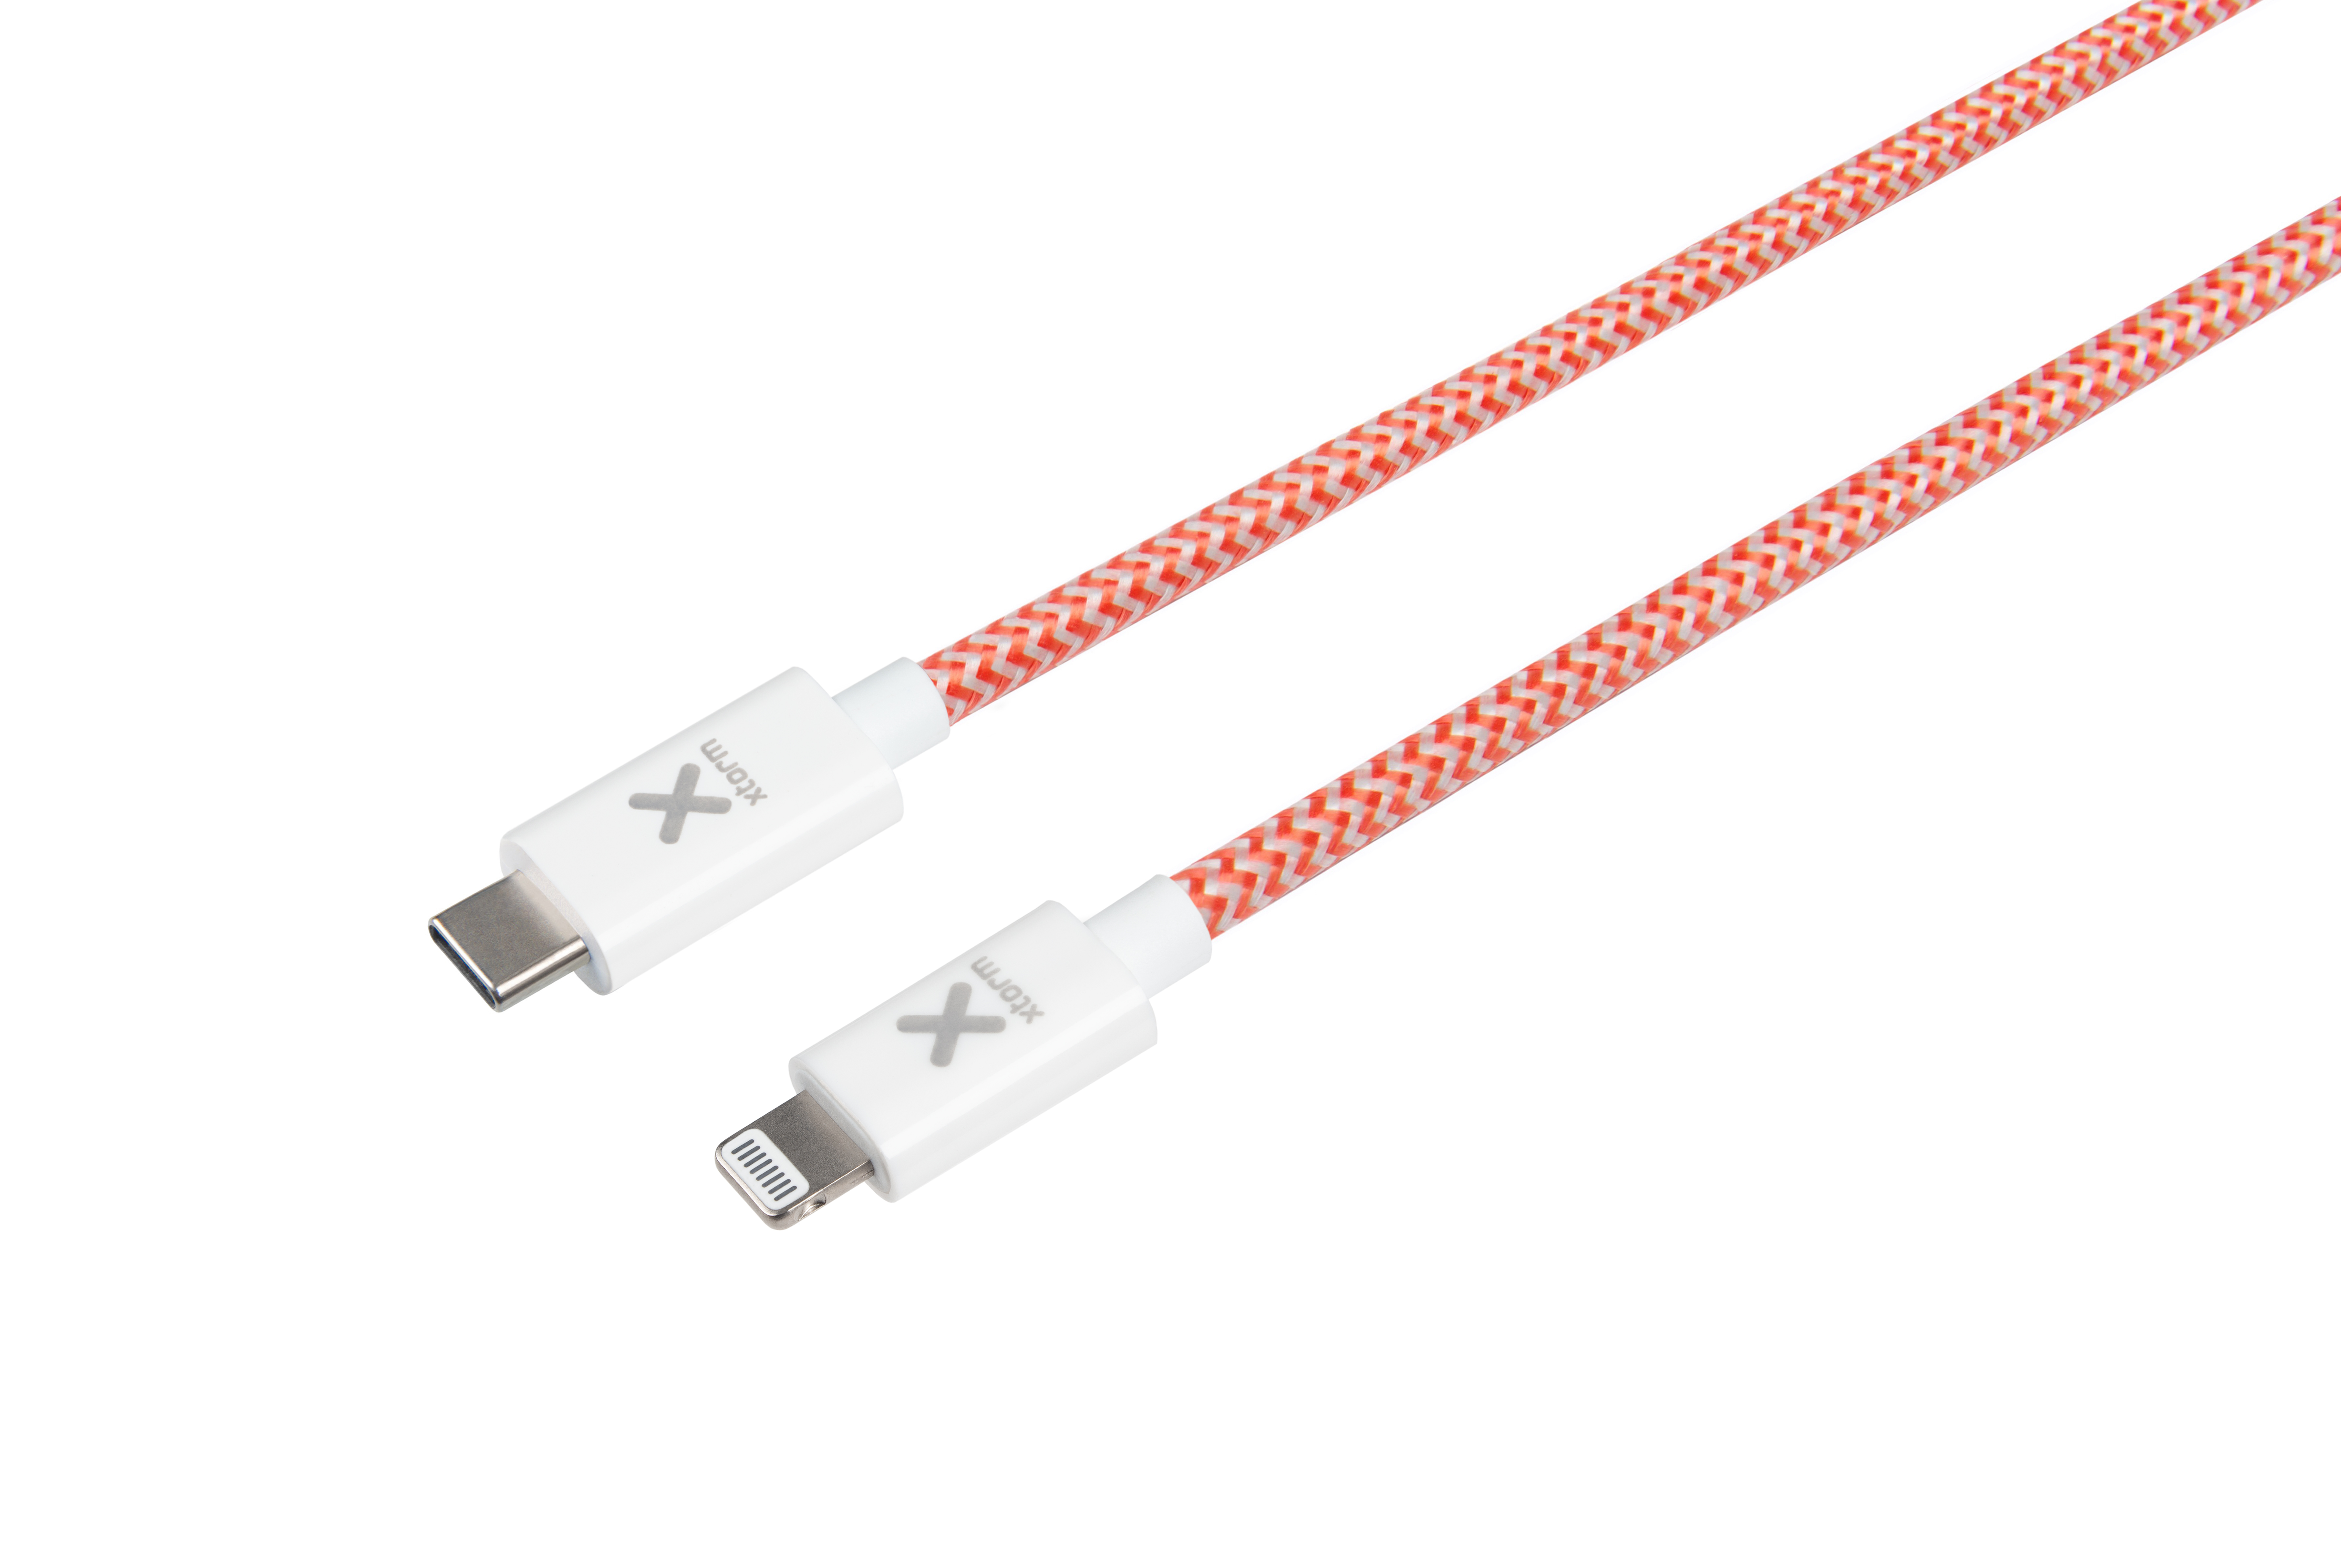 Kabel Original XTORM Cable Series USB